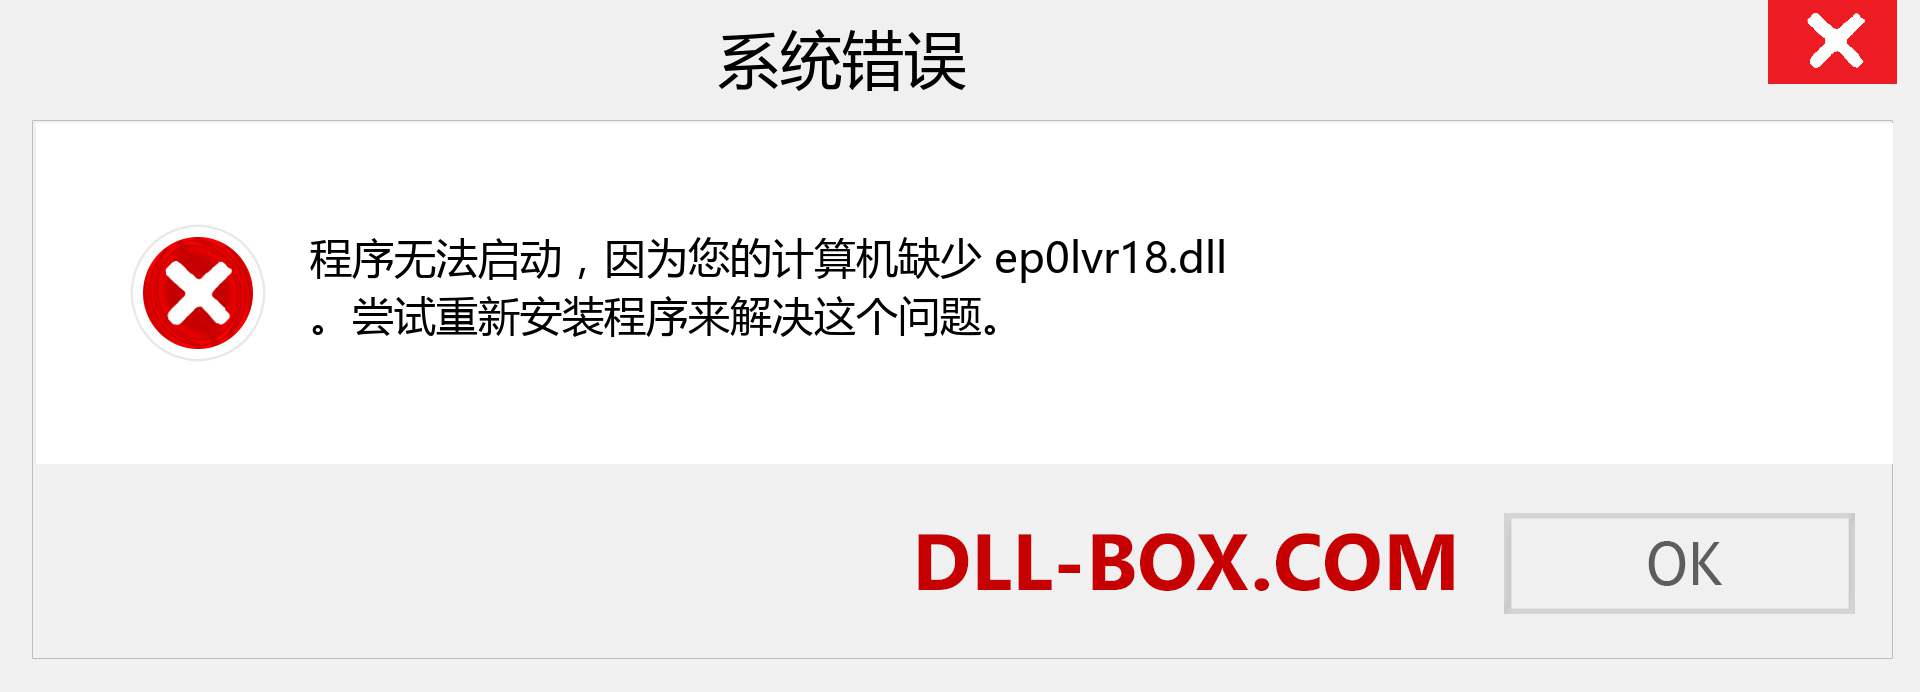 ep0lvr18.dll 文件丢失？。 适用于 Windows 7、8、10 的下载 - 修复 Windows、照片、图像上的 ep0lvr18 dll 丢失错误